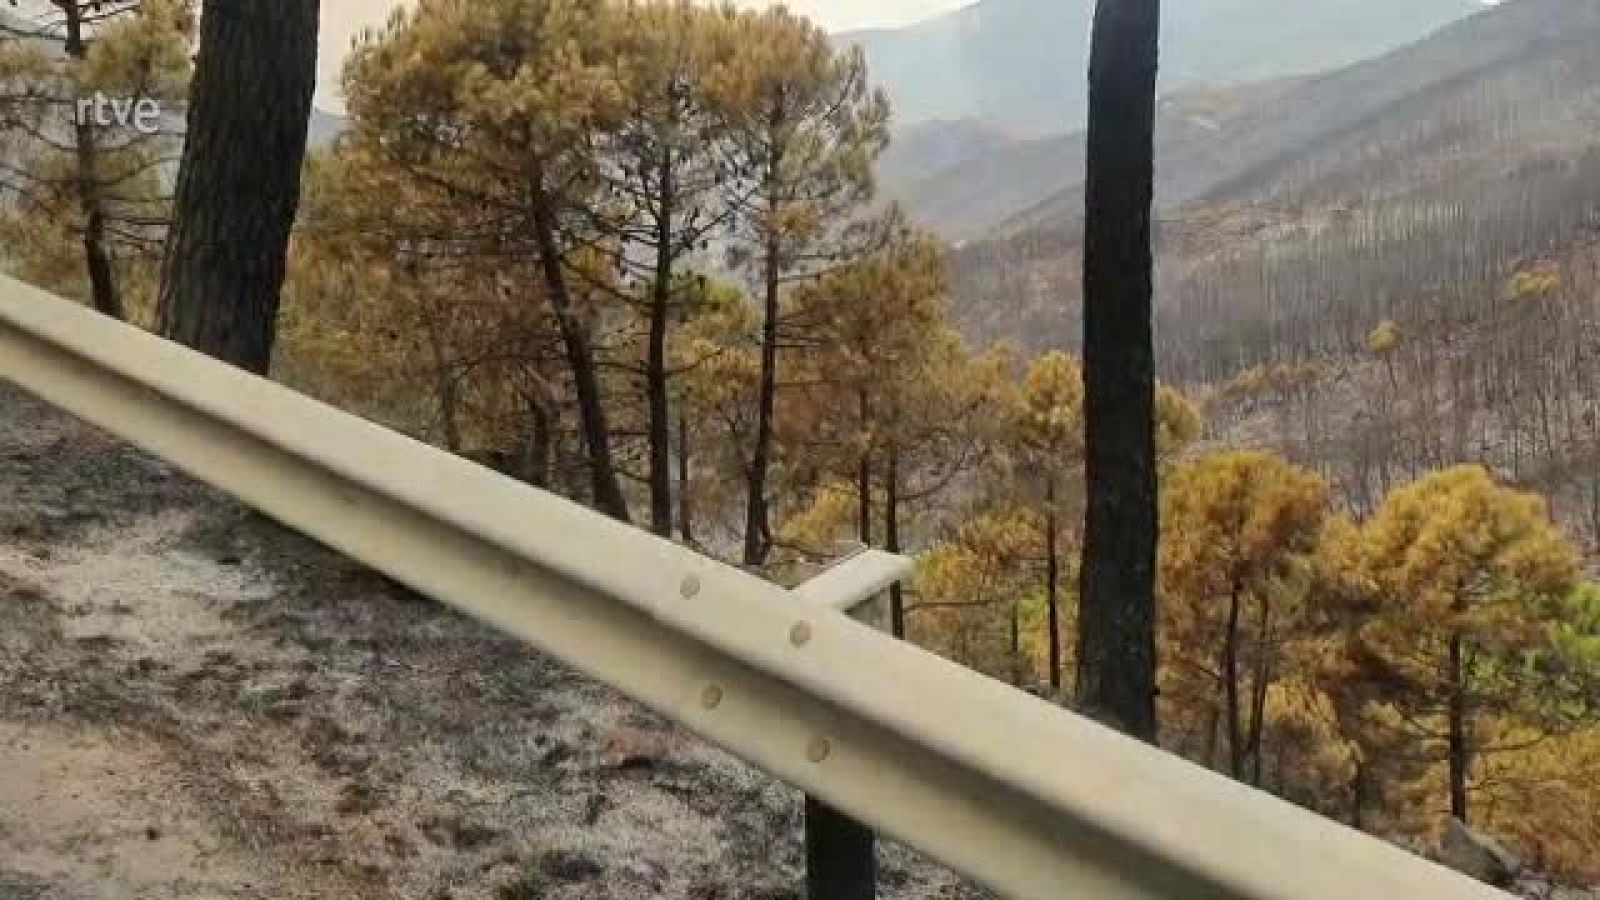 Vídeo de la cabra montesa quemada en el incendio forestal de Sierra Bermeja, cedido a VerificaRTVE por GA Francisco